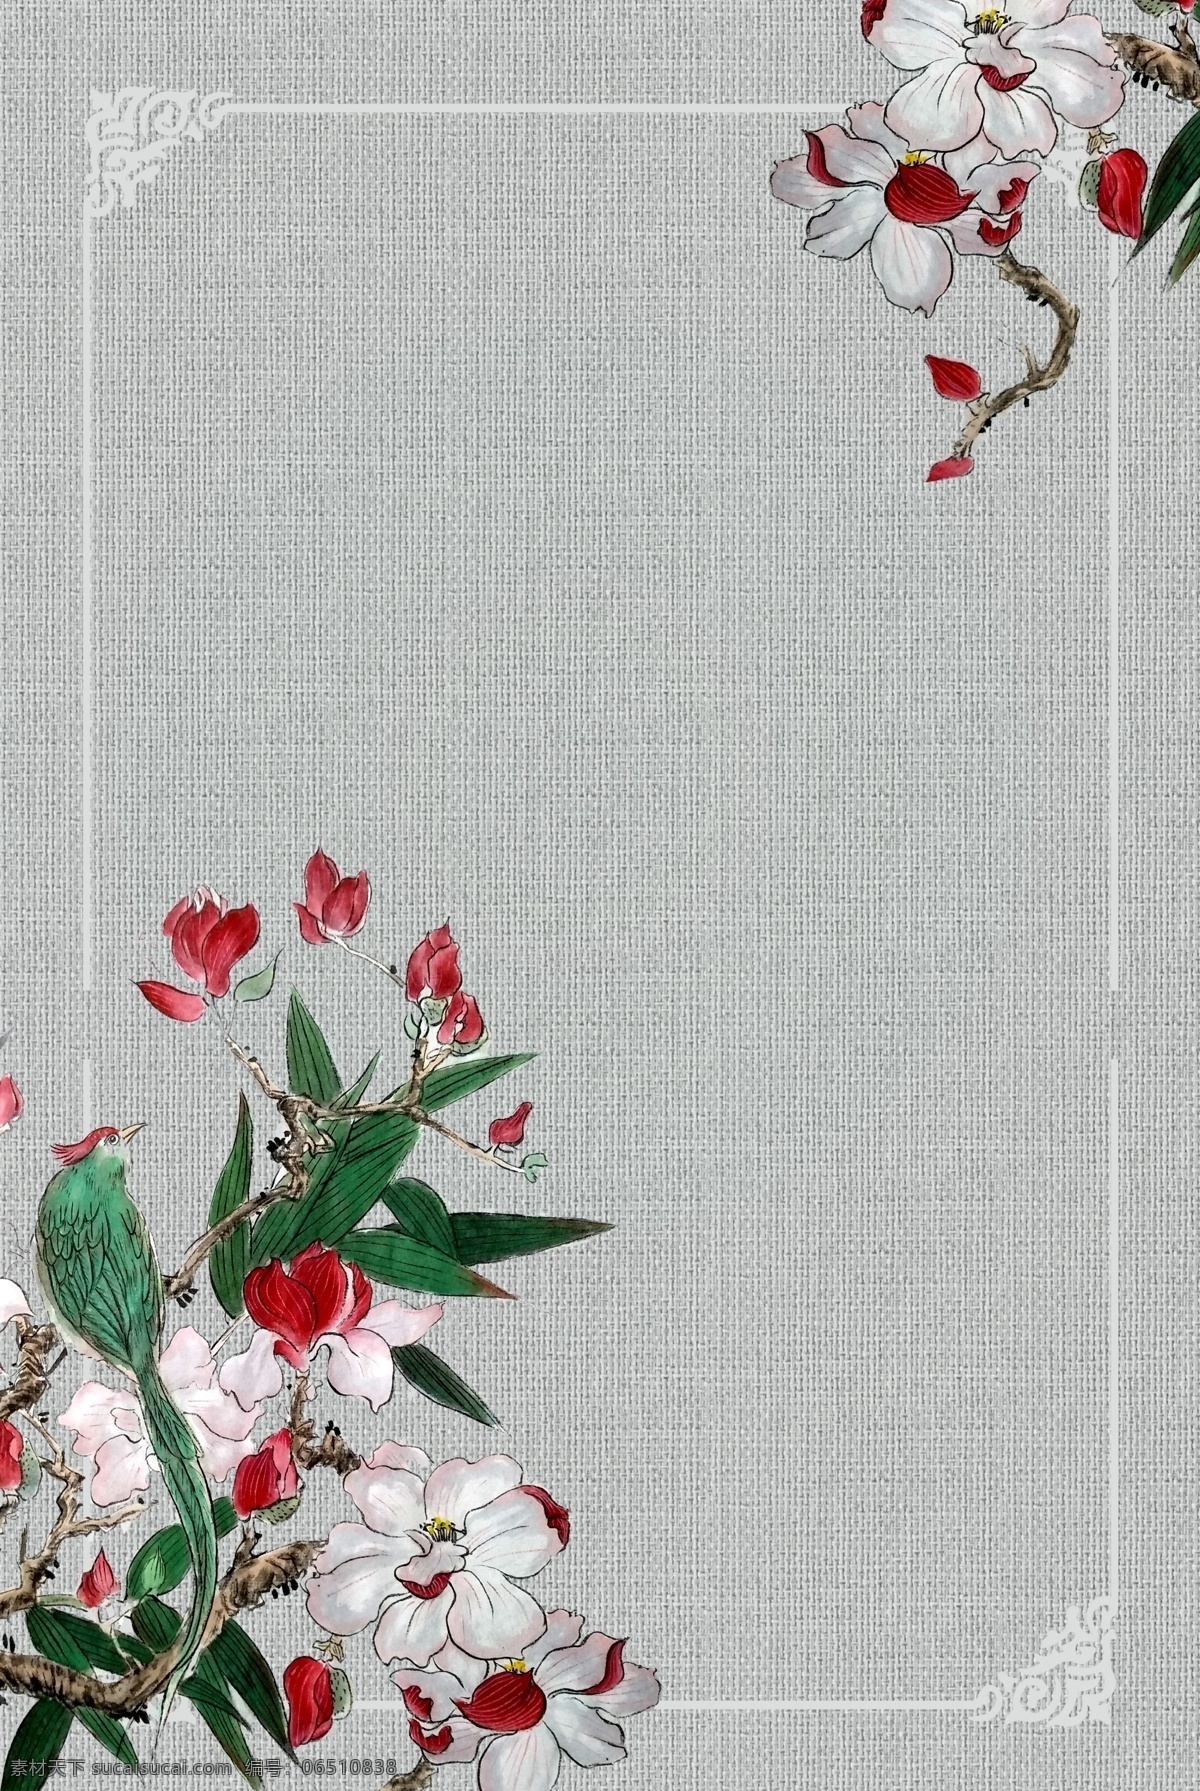 中式 古典 远山 花卉 工笔画 古风 背景 花朵 海报背景模板 传统海报 手绘 中式海报背景